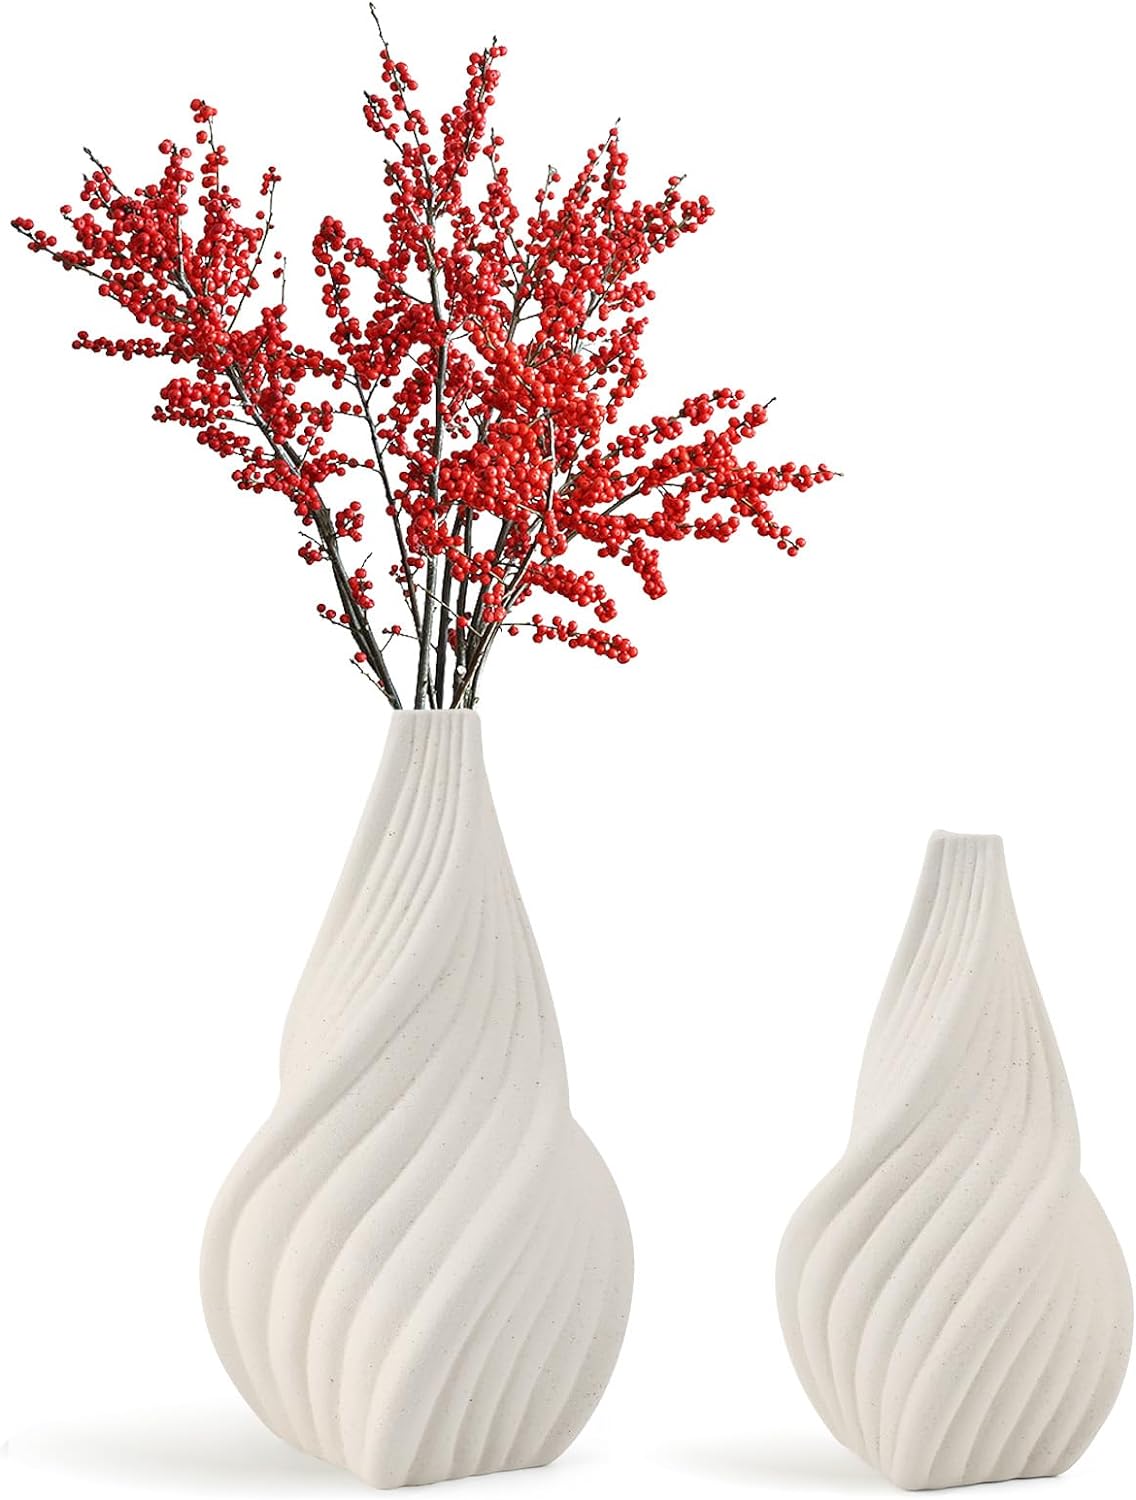 White Ceramic Vase, Ceramic Flower Vases for Minimalist Modern Home Decor, Pampas Flower Vase, Small Boho Vase for Living Room Decor, Wedding, Dining Table, Bookshelf, Centerpiece (2PCS)